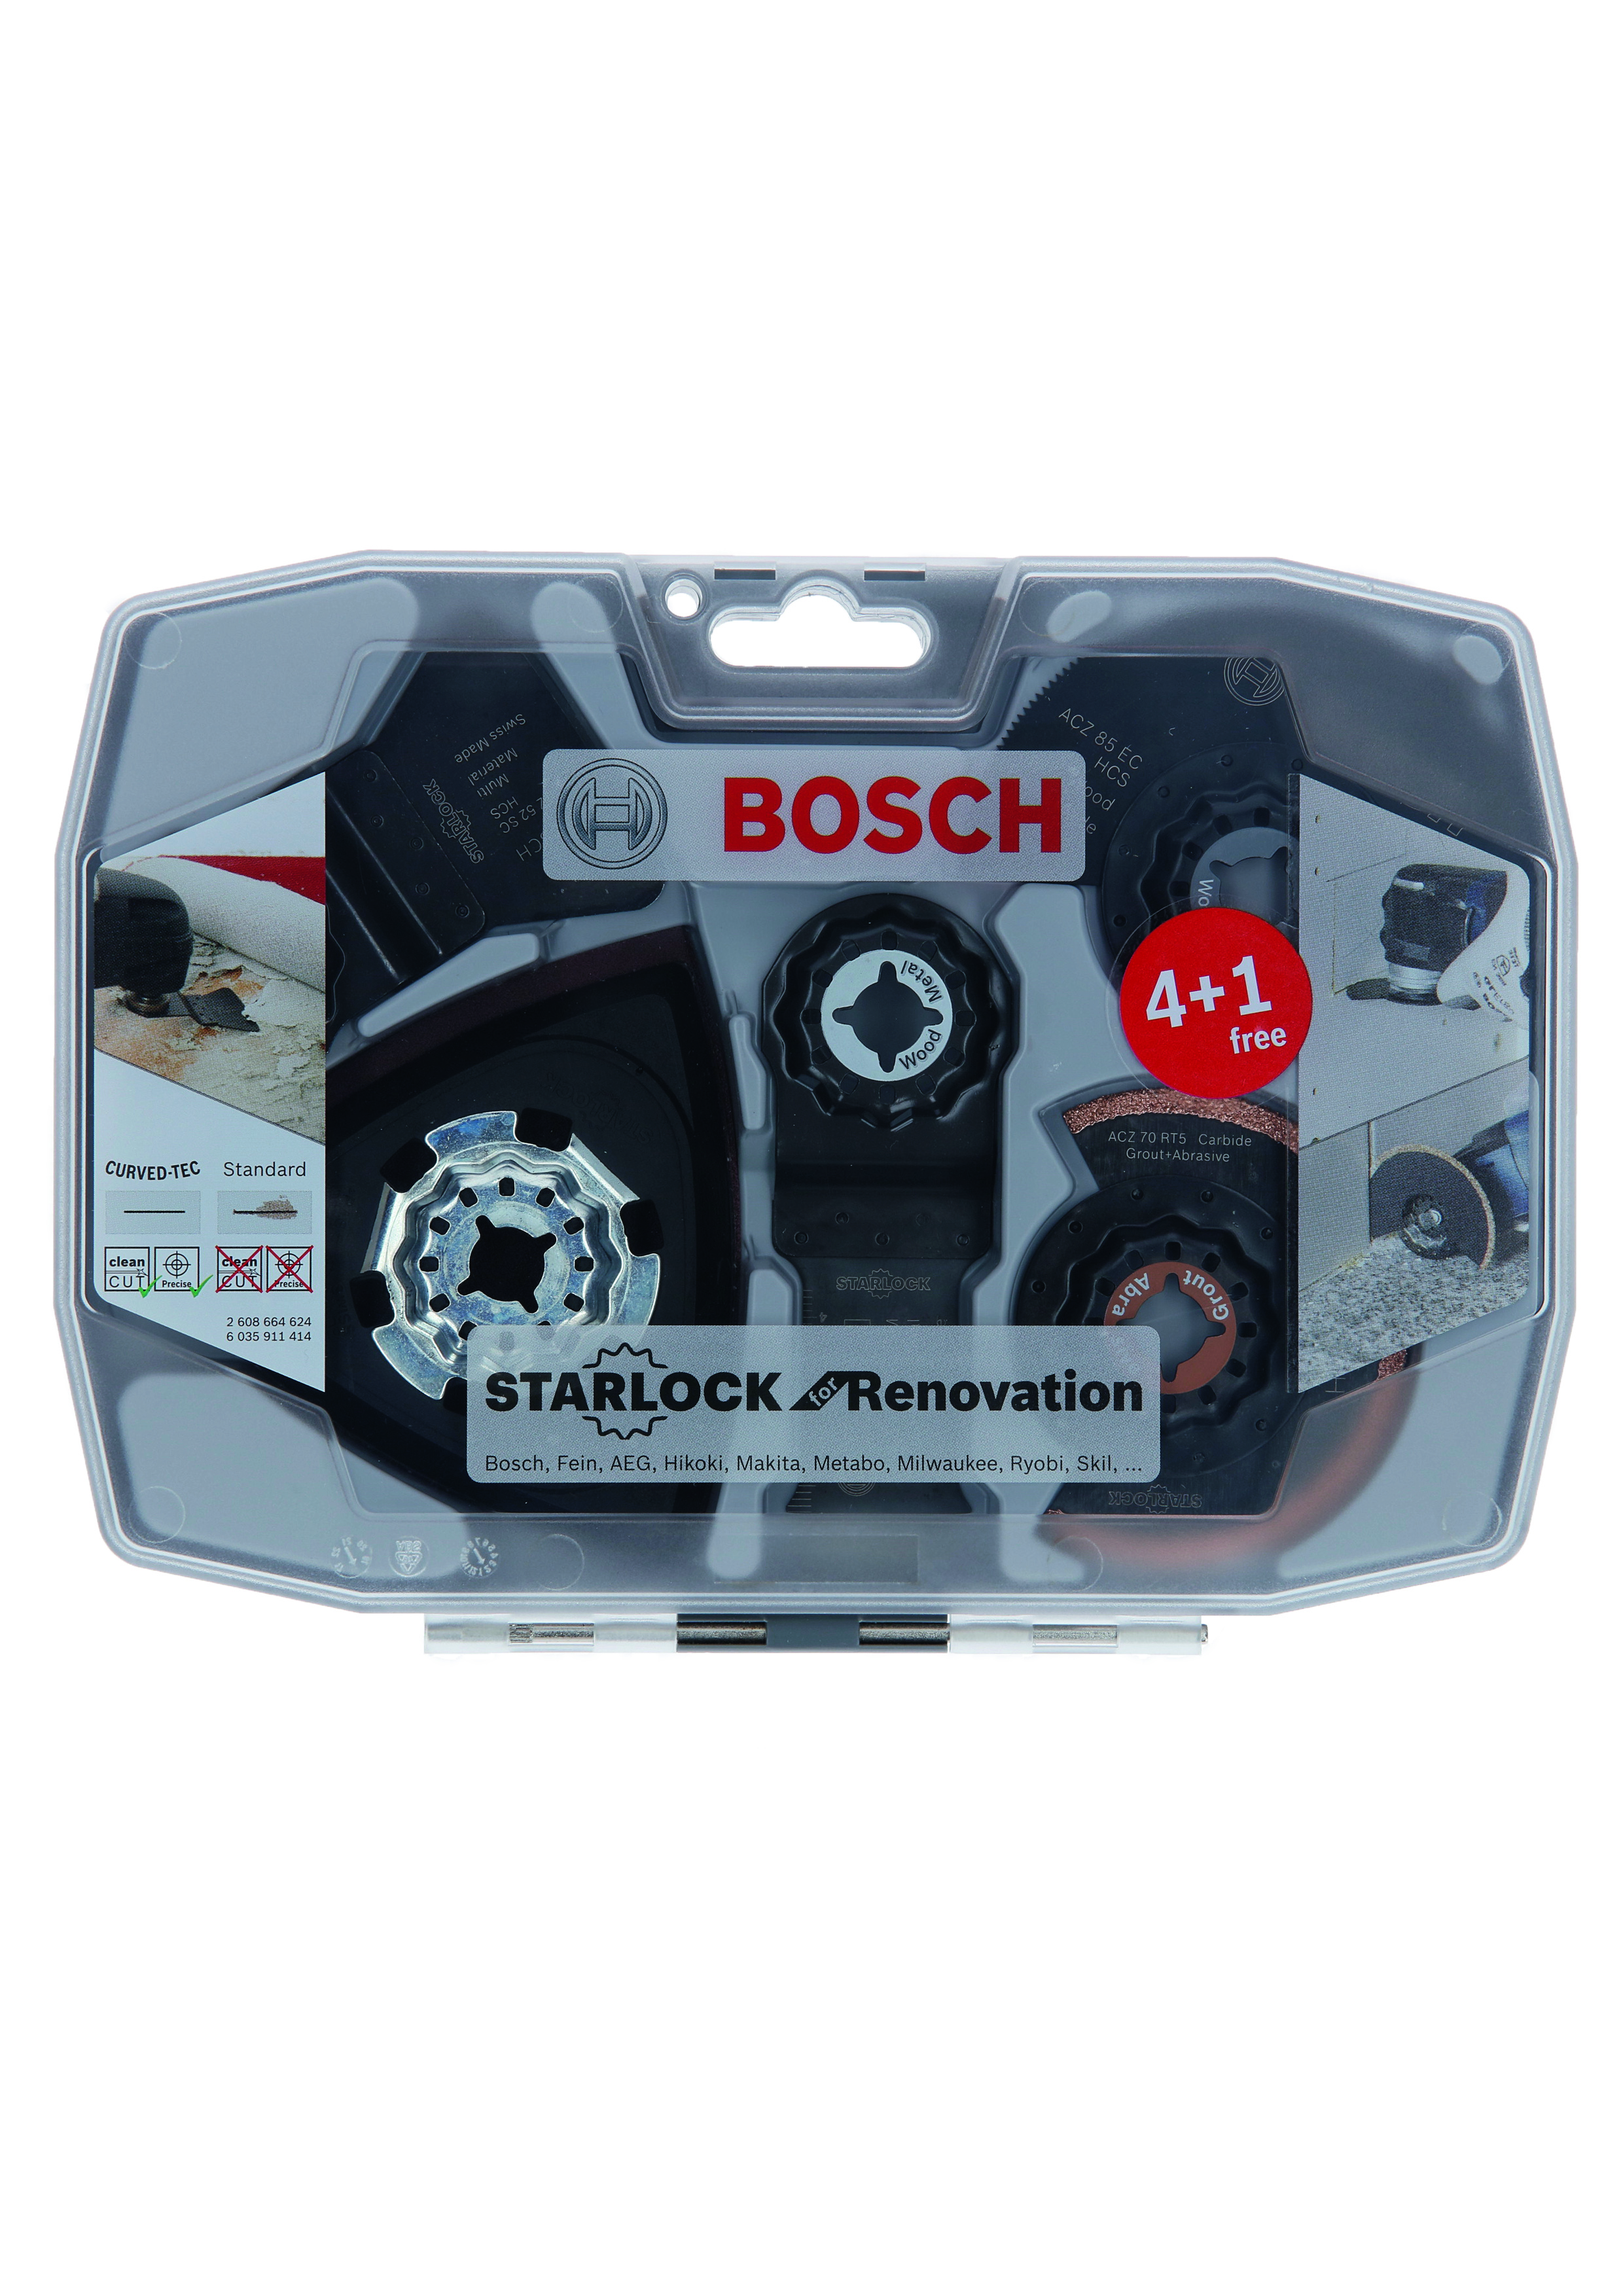 Bosch RB-Set Starlock für Renovierungsarbeiten